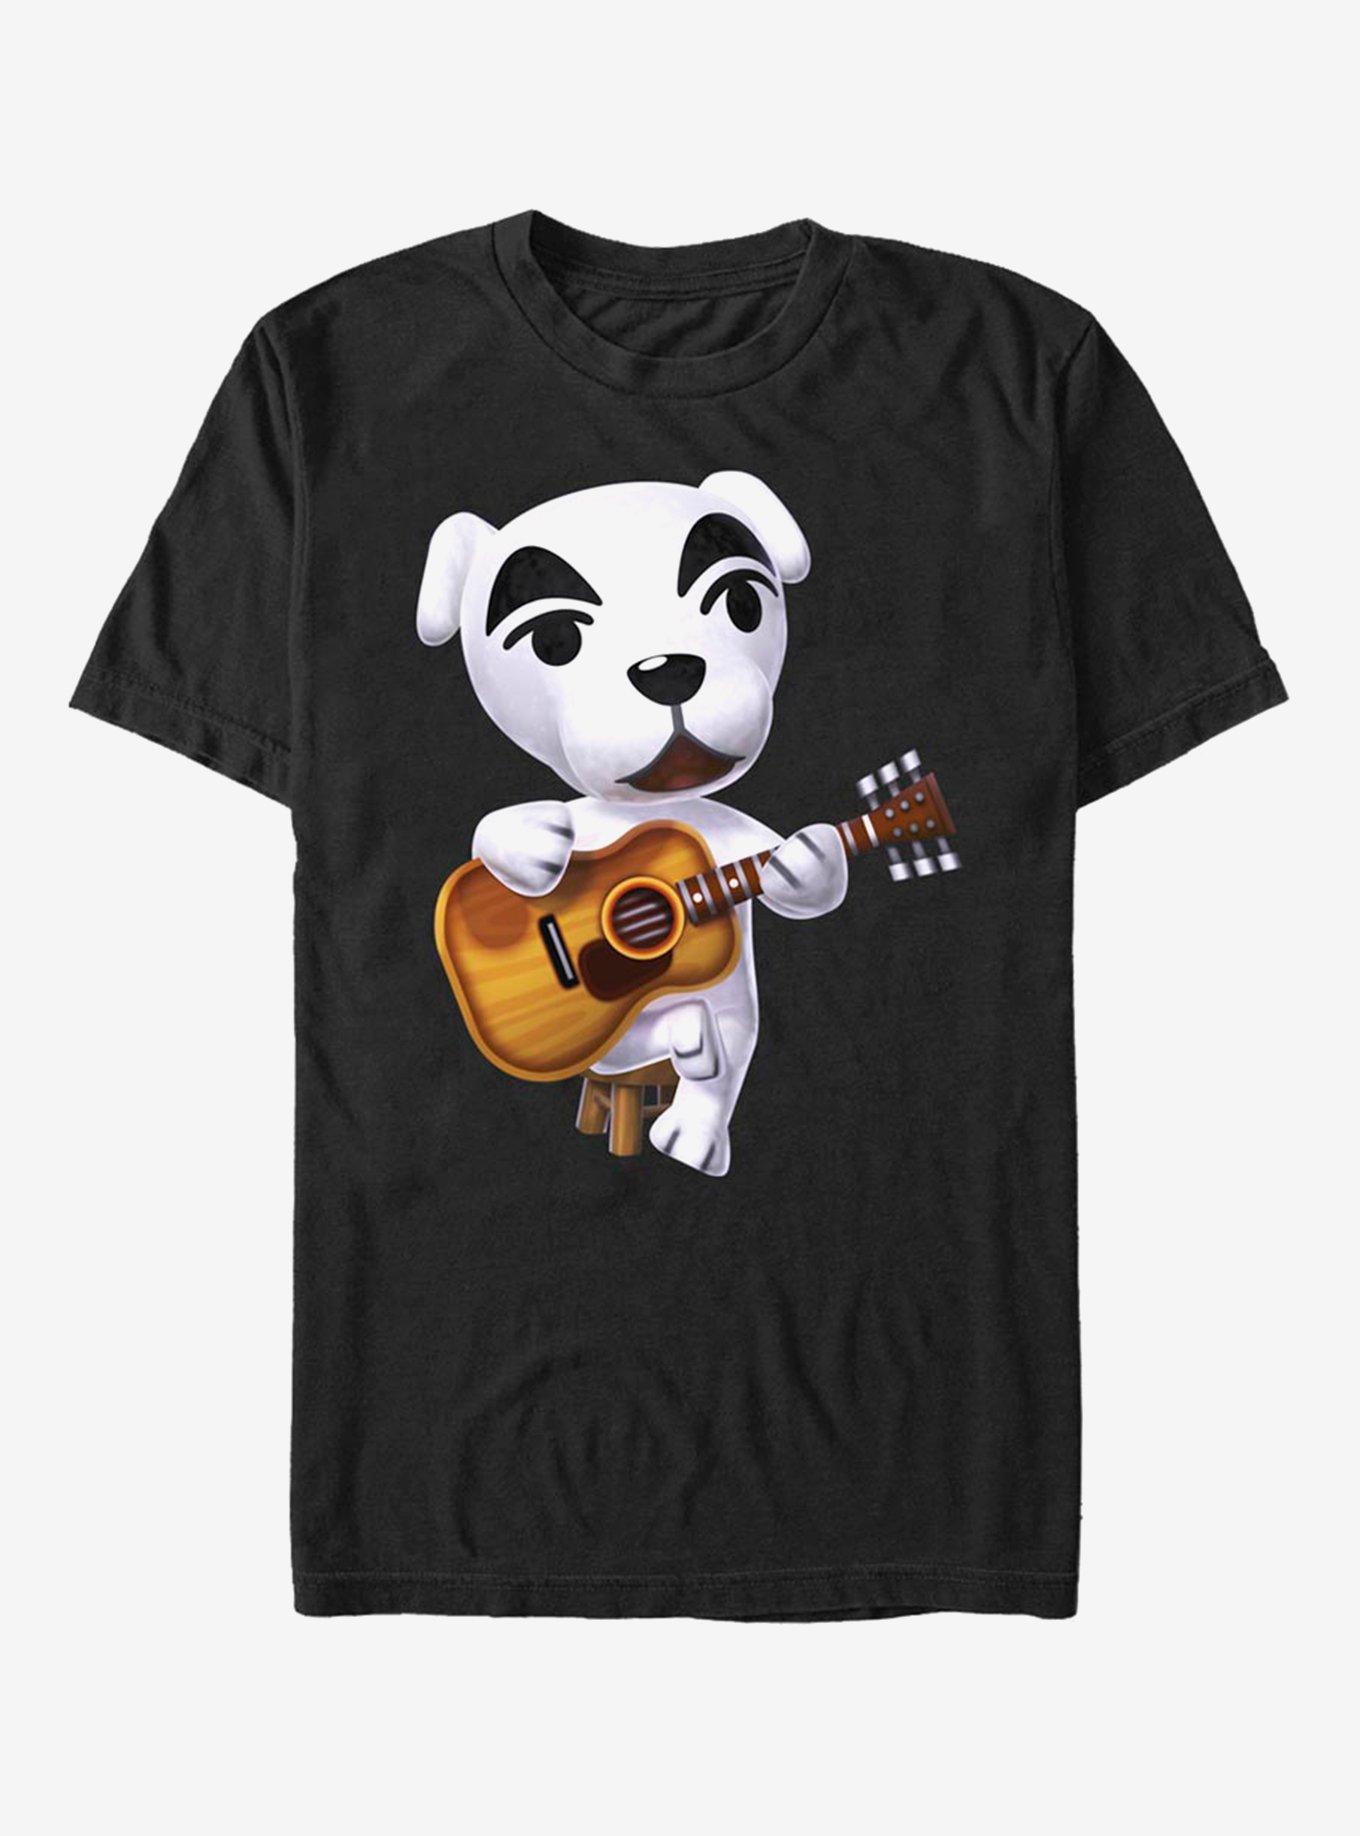 Extra Soft Nintendo Animal Crossing K.K. Slider T-Shirt